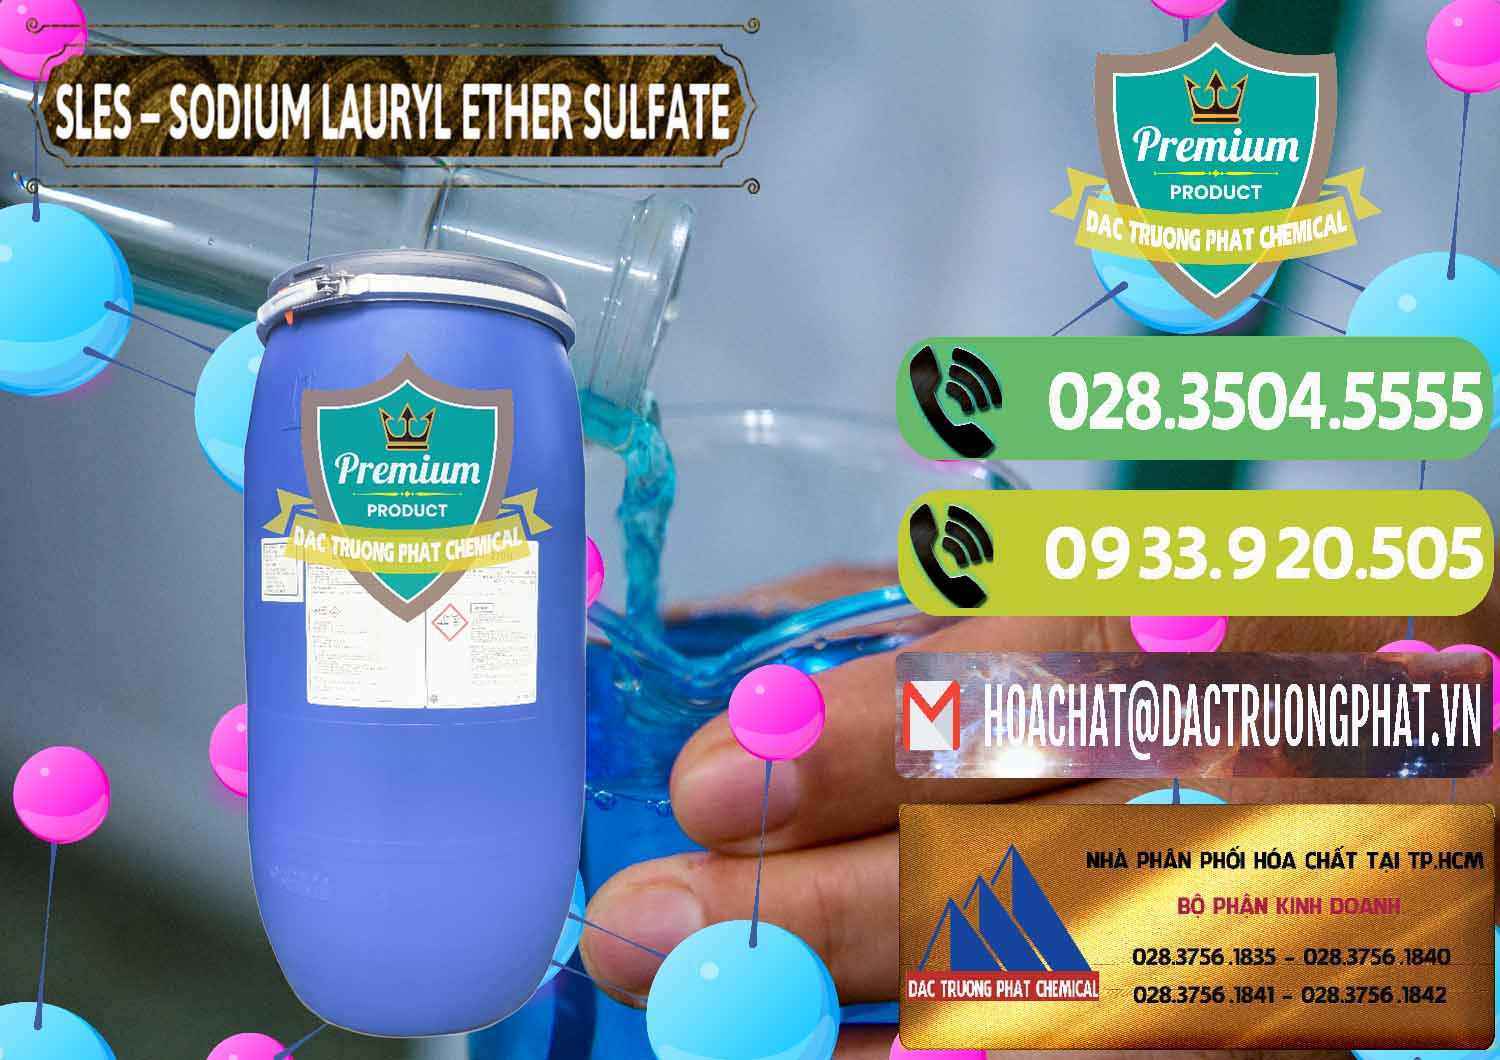 Nơi chuyên phân phối _ bán Chất Tạo Bọt Sles - Sodium Lauryl Ether Sulphate Kao Indonesia - 0046 - Cty chuyên nhập khẩu và cung cấp hóa chất tại TP.HCM - hoachatmientay.vn